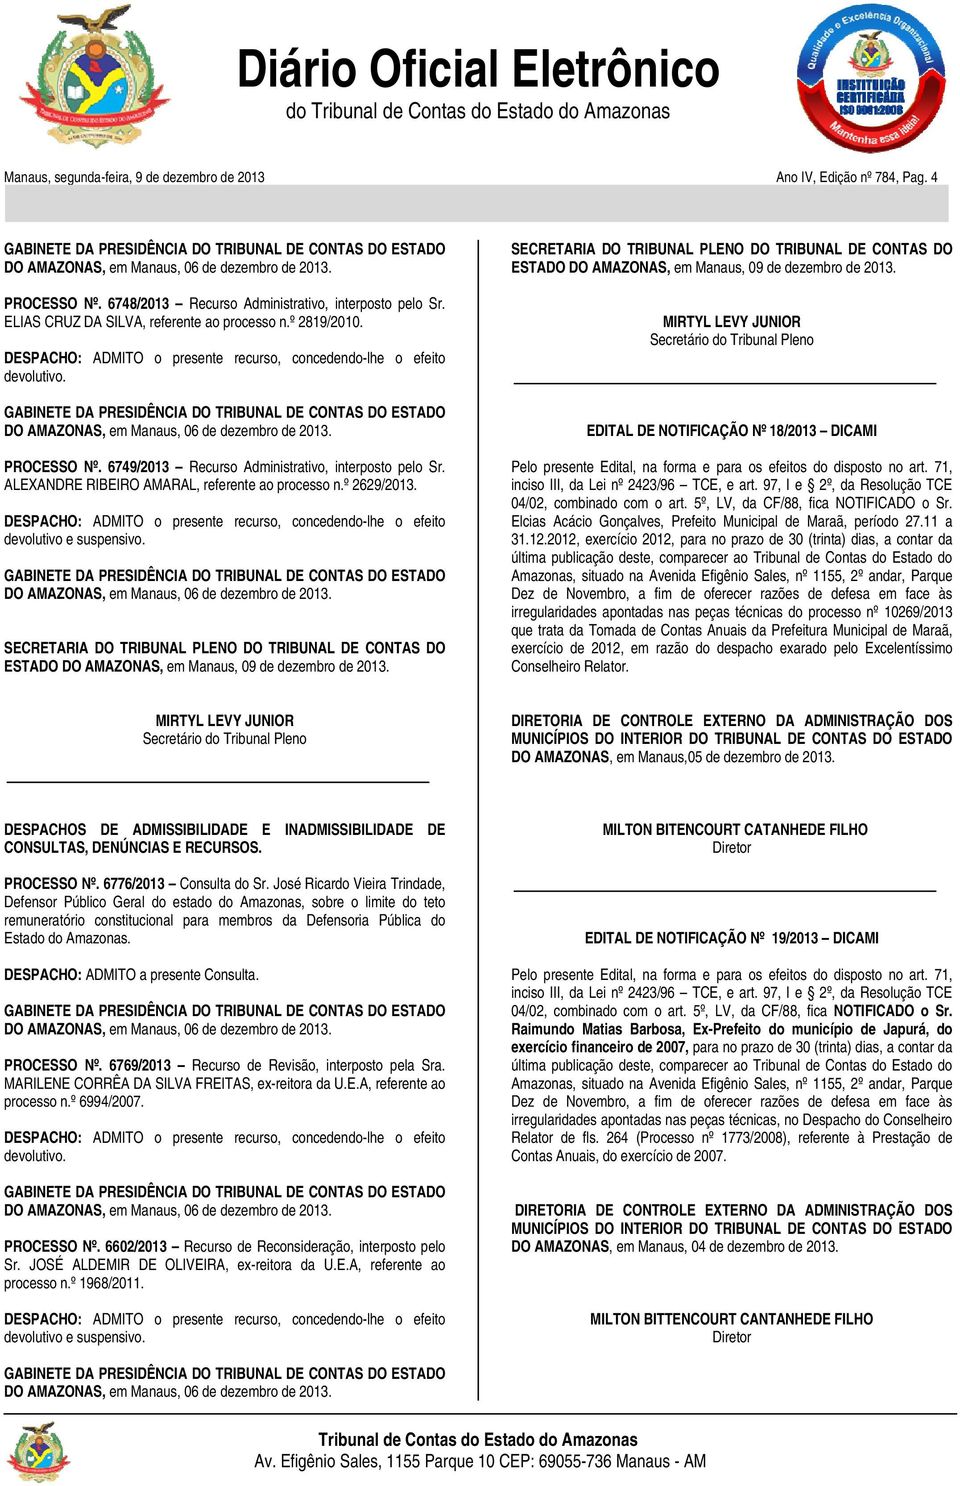 6749/2013 Recurso Administrativo, interposto pelo Sr. ALEXANDRE RIBEIRO AMARAL, referente ao processo n.º 2629/ DESPACHO: ADMITO o presente recurso, concedendo-lhe o efeito devolutivo e suspensivo.